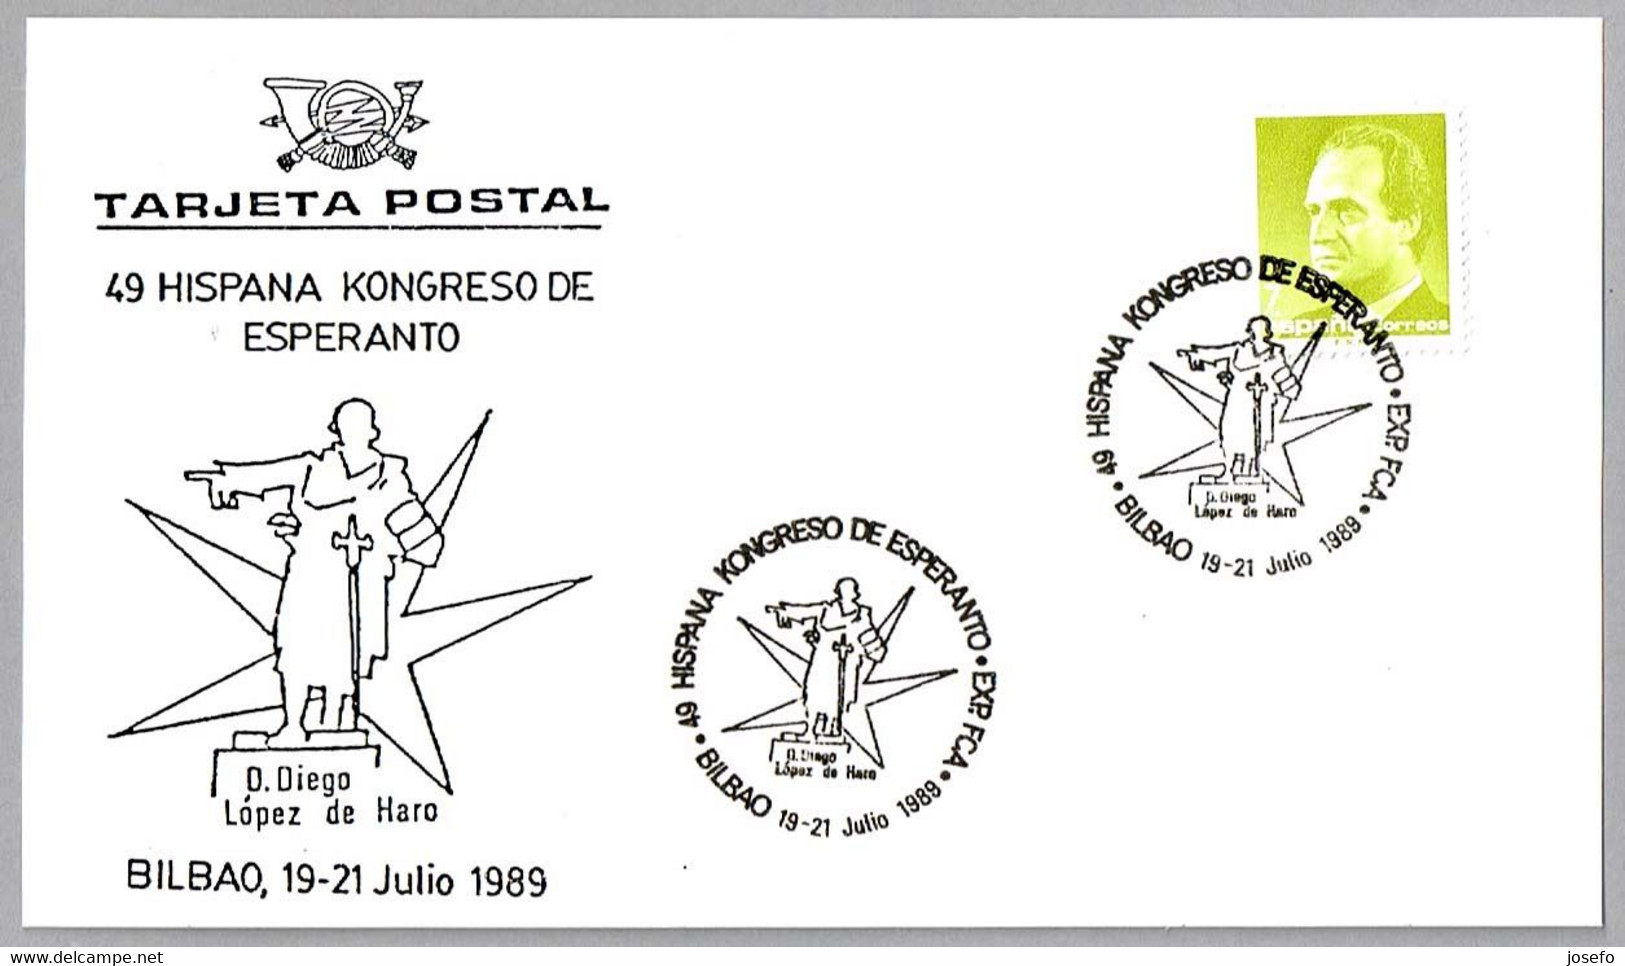 49 HISPANA KONGRESO DE ESPERANTO. Bilbao, Vizcaya, Pais Vasco, 1989 - Esperanto